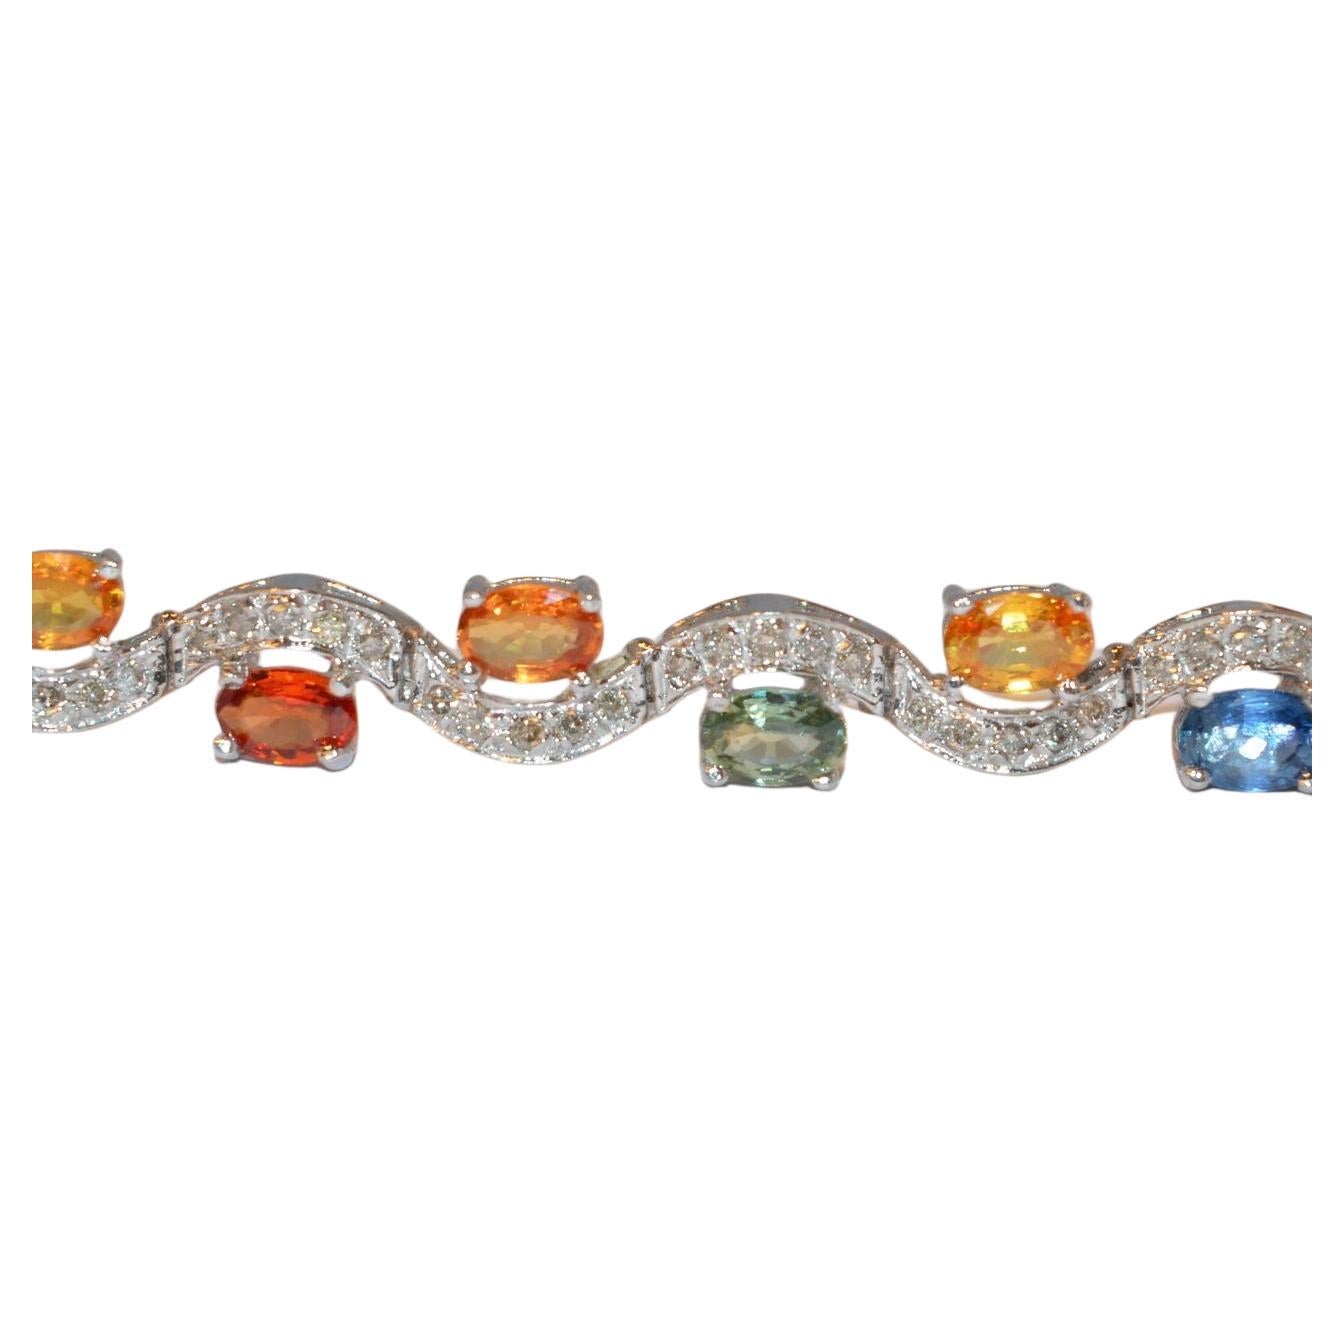 24 carat diamond chain